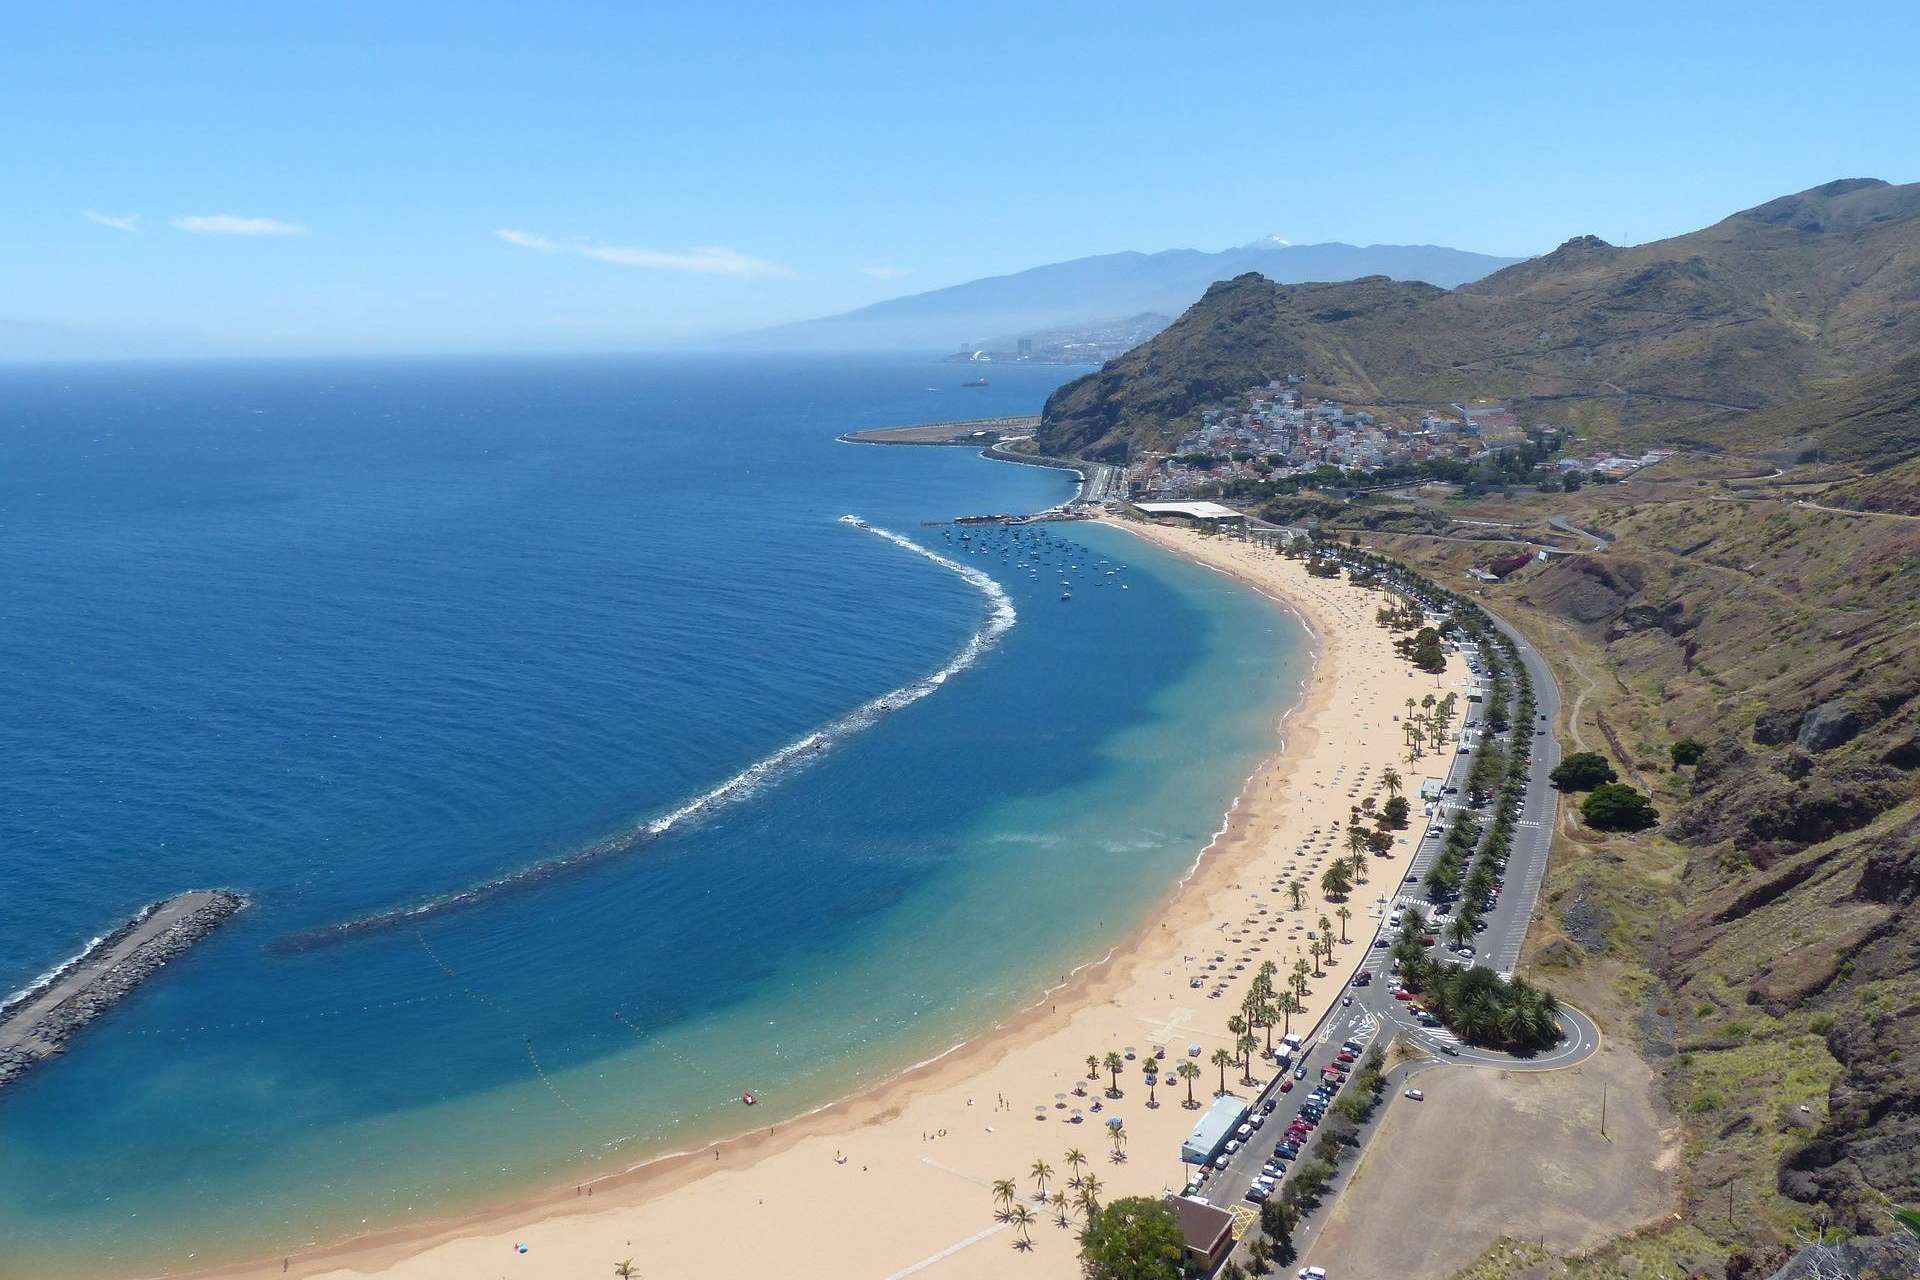 Vacaciones en Santa Cruz de Tenerife con ISholidays.com